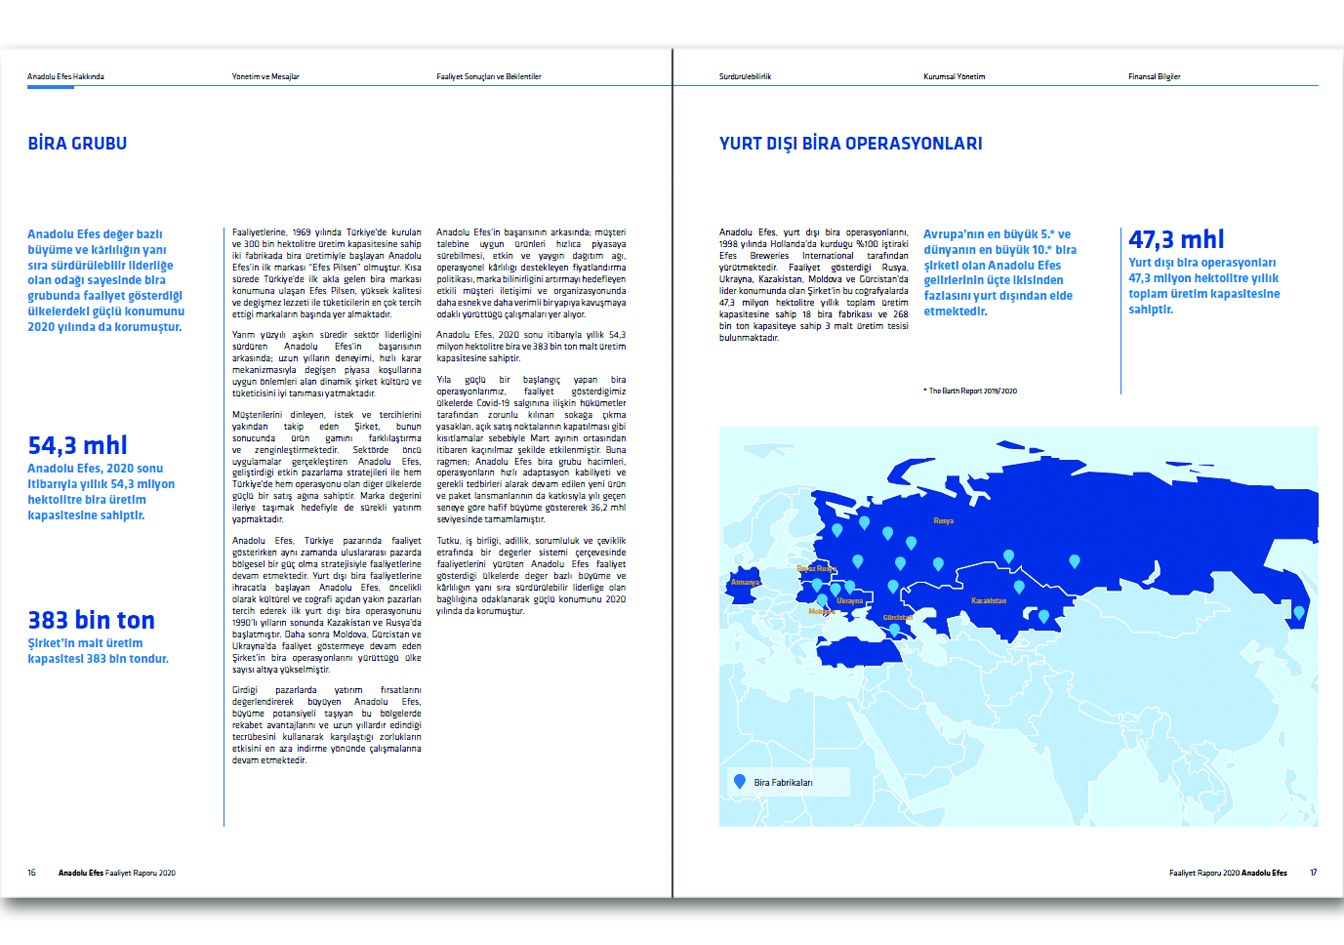 ANADOLU EFES / 2020 Faaliyet Raporu / 2020 Annual Report